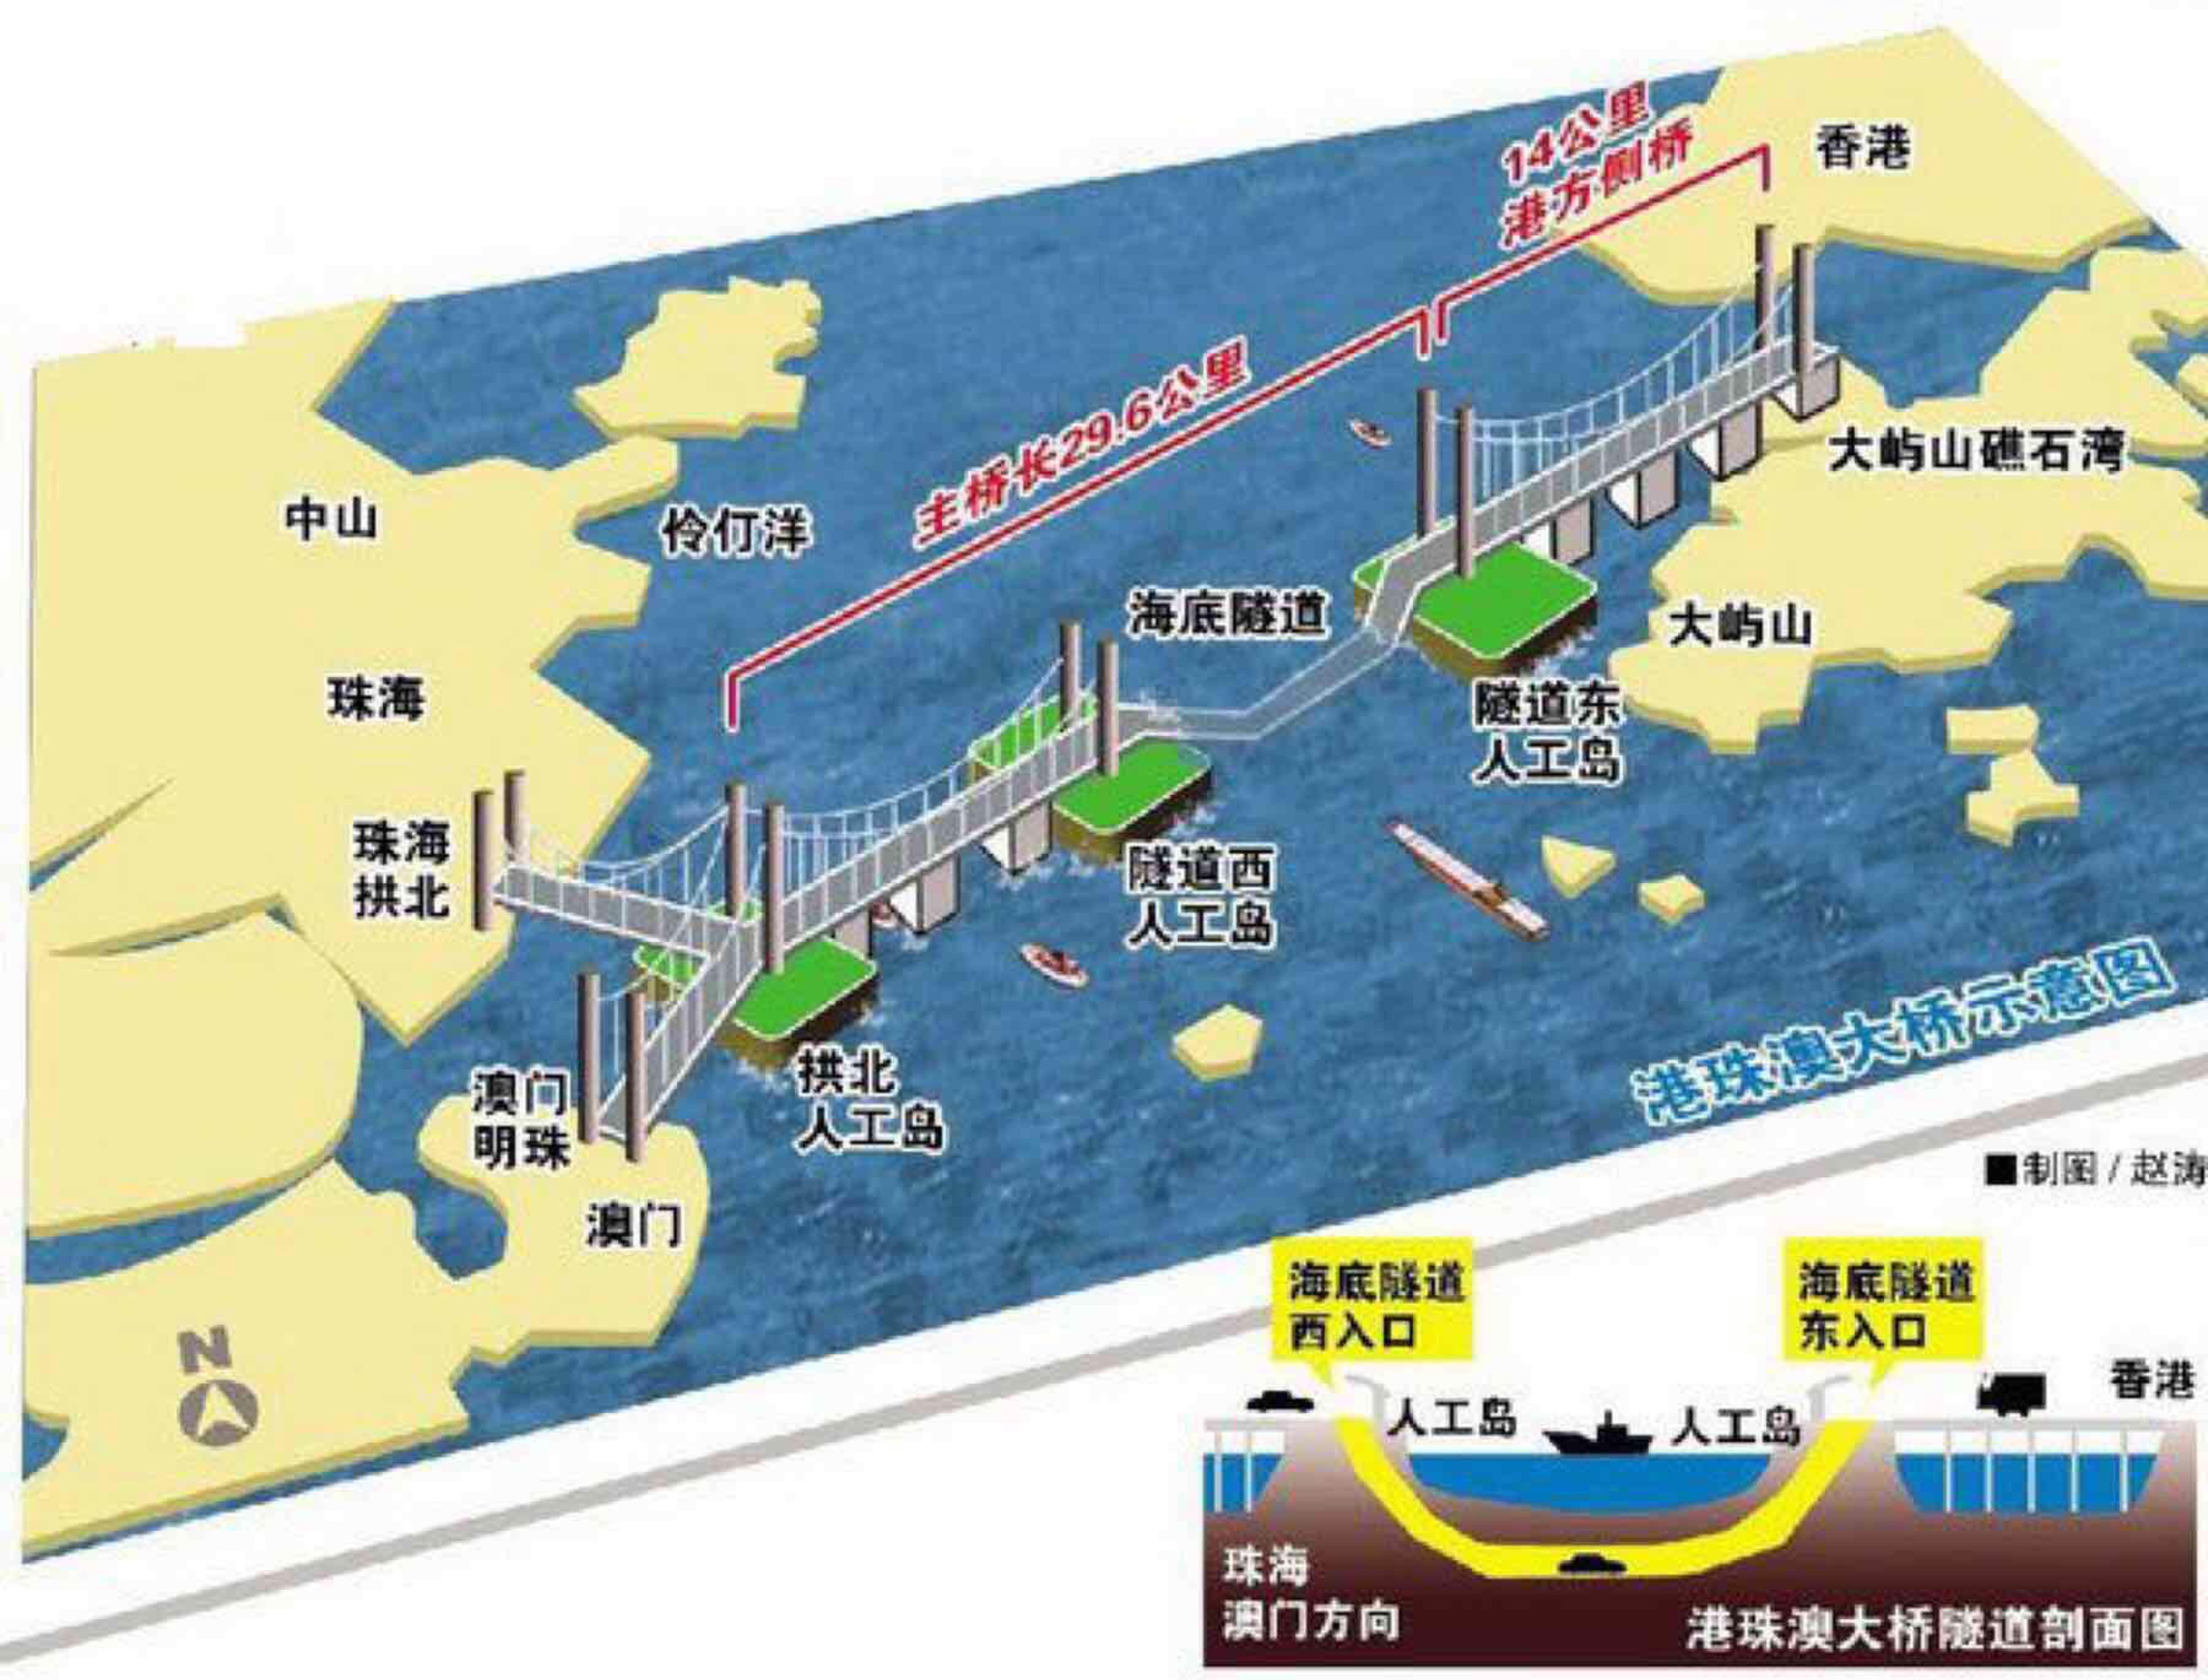 港珠澳大桥香港口岸连接道路启用临时特别交通安排-国际在线